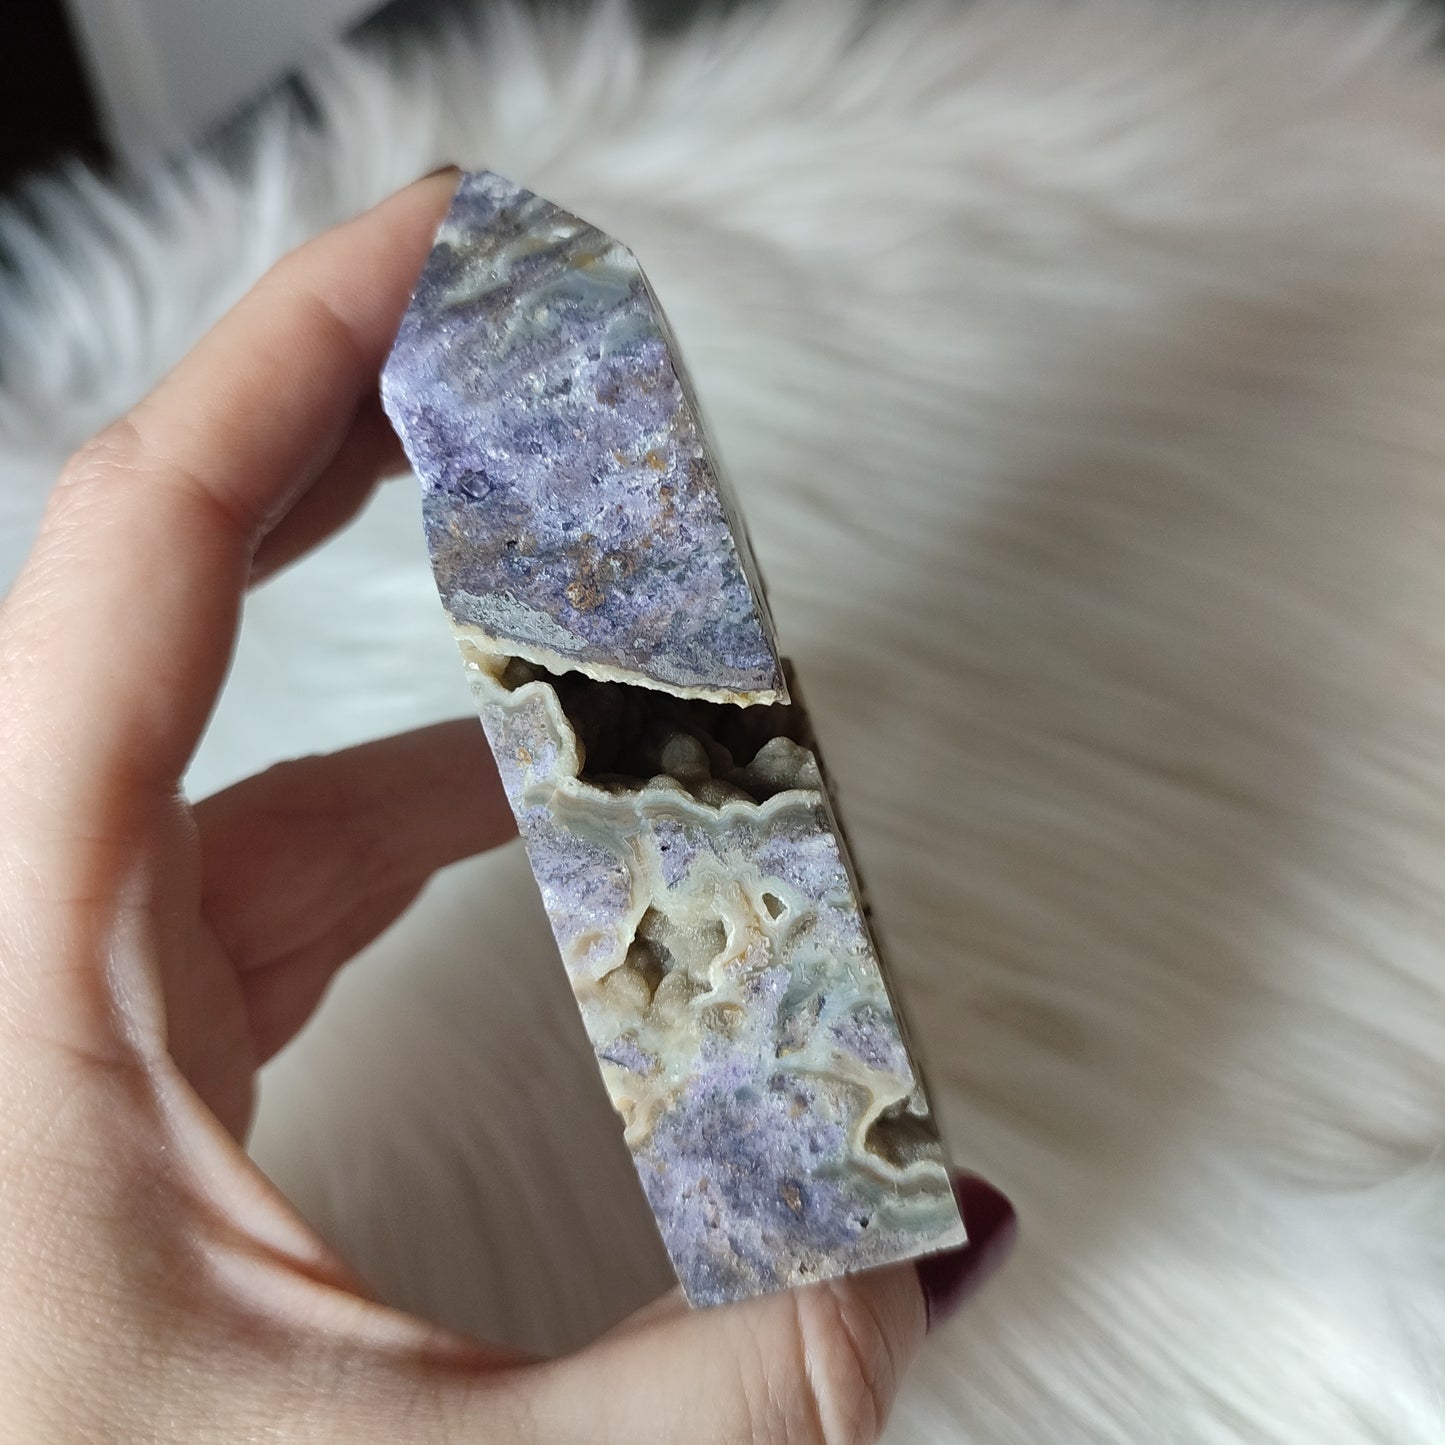 Punta esfalerita purpura cristalizada con terminación bulbosa